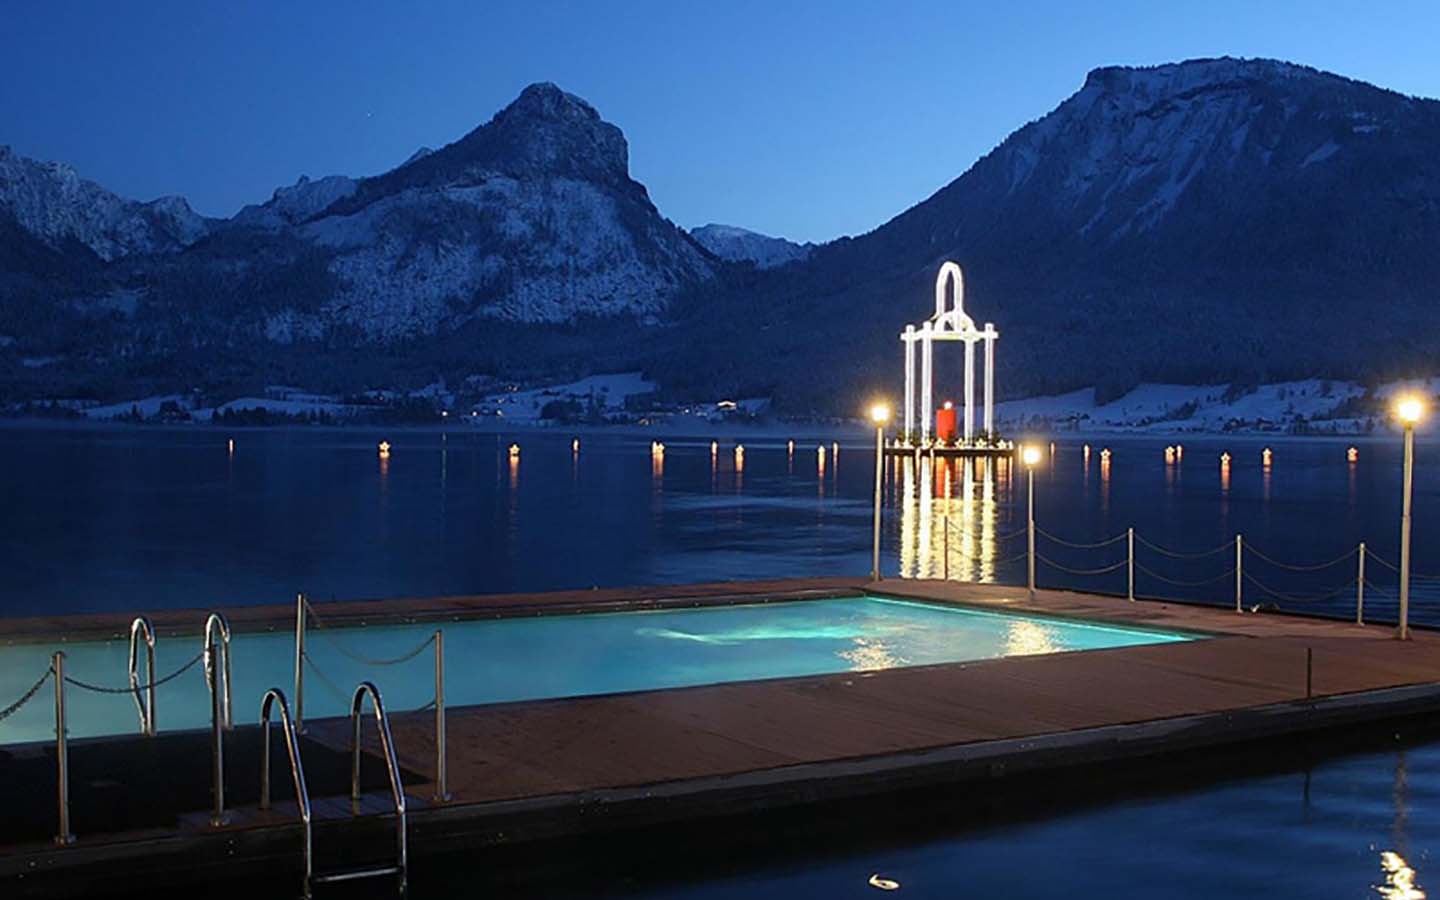 Romantik Hotel im Weissen Rössl am Wolfgangsee, schwimmendes Schwimmbad